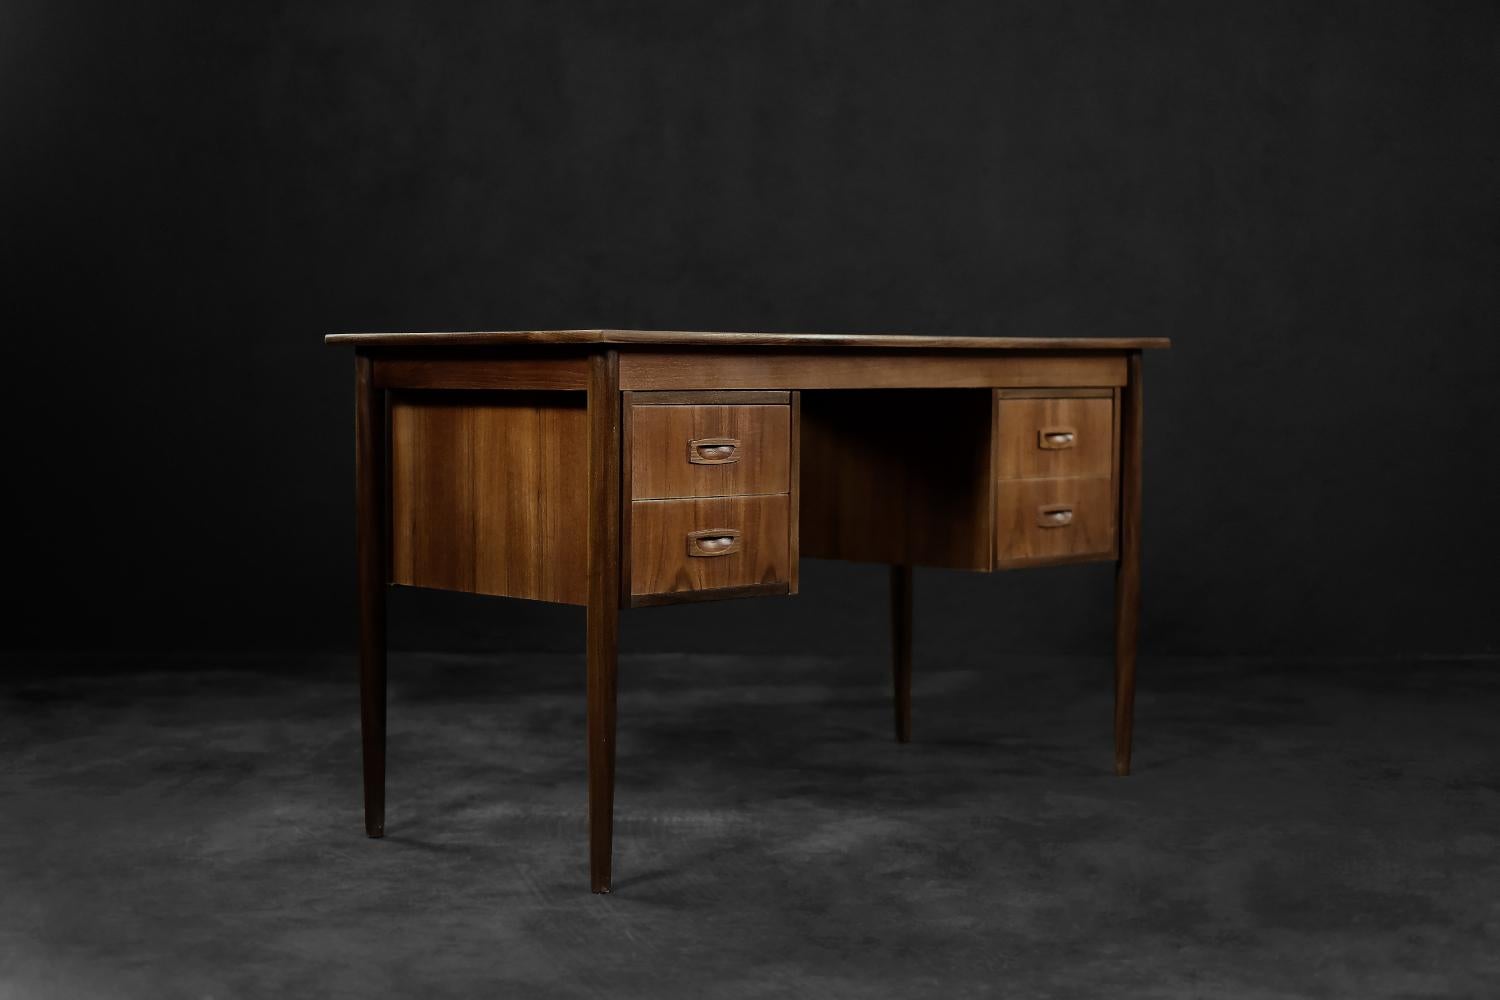 Dieser klassische Schreibtisch wurde in den 1960er Jahren in Dänemark hergestellt. Er wurde aus Teakholz in einem warmen Braunton mit sichtbarer Maserung gefertigt. Der Schreibtisch hat vier Schubladen. Zwei auf beiden Seiten. Die schlanken und